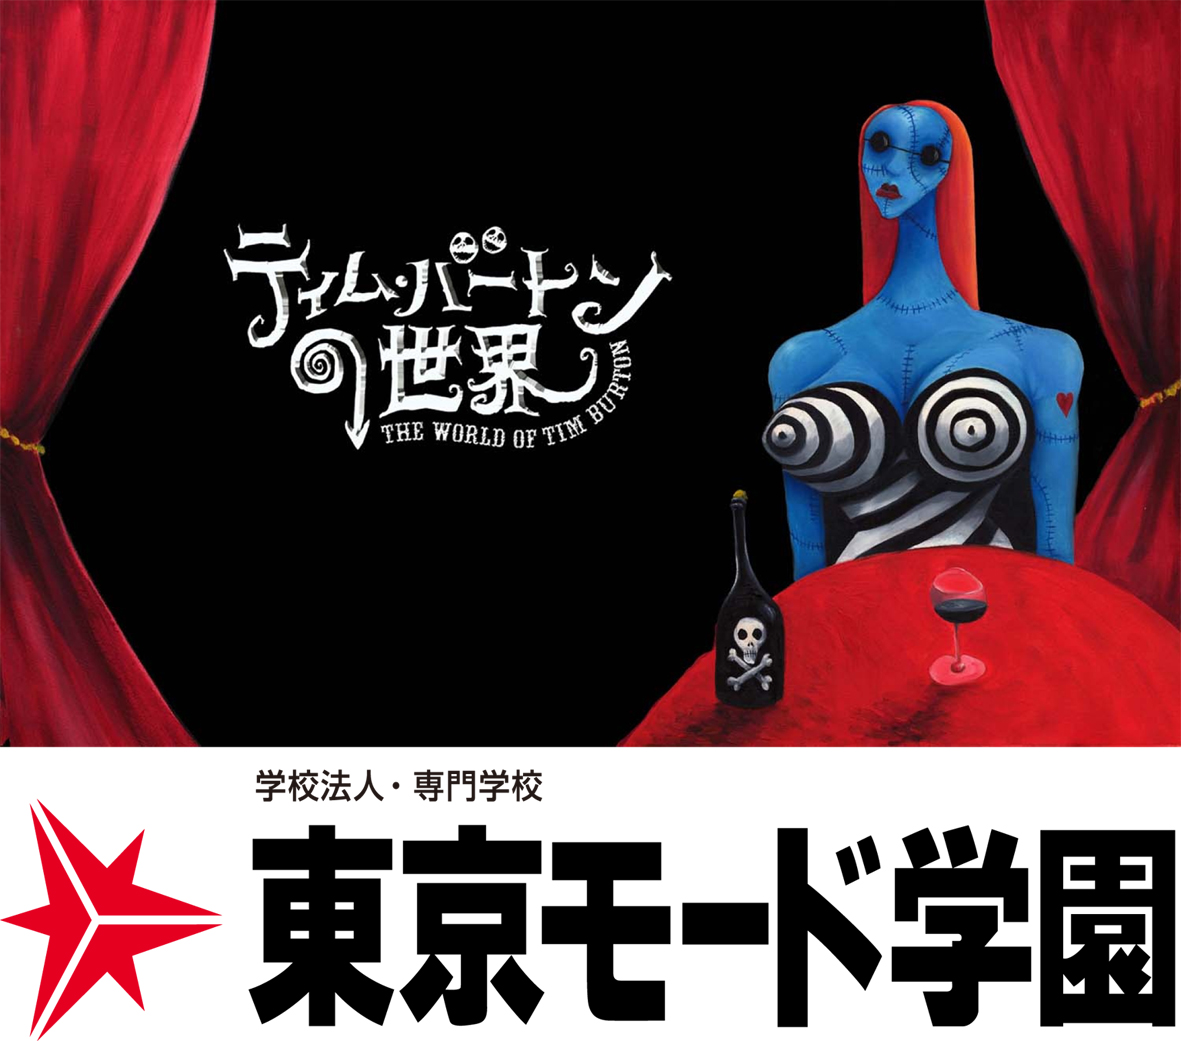 ティム バートンの世界 The World Of Tim Burton 東京モード学園スペシャルセッション 11月1日 土 開催 学校法人 日本 教育財団のプレスリリース